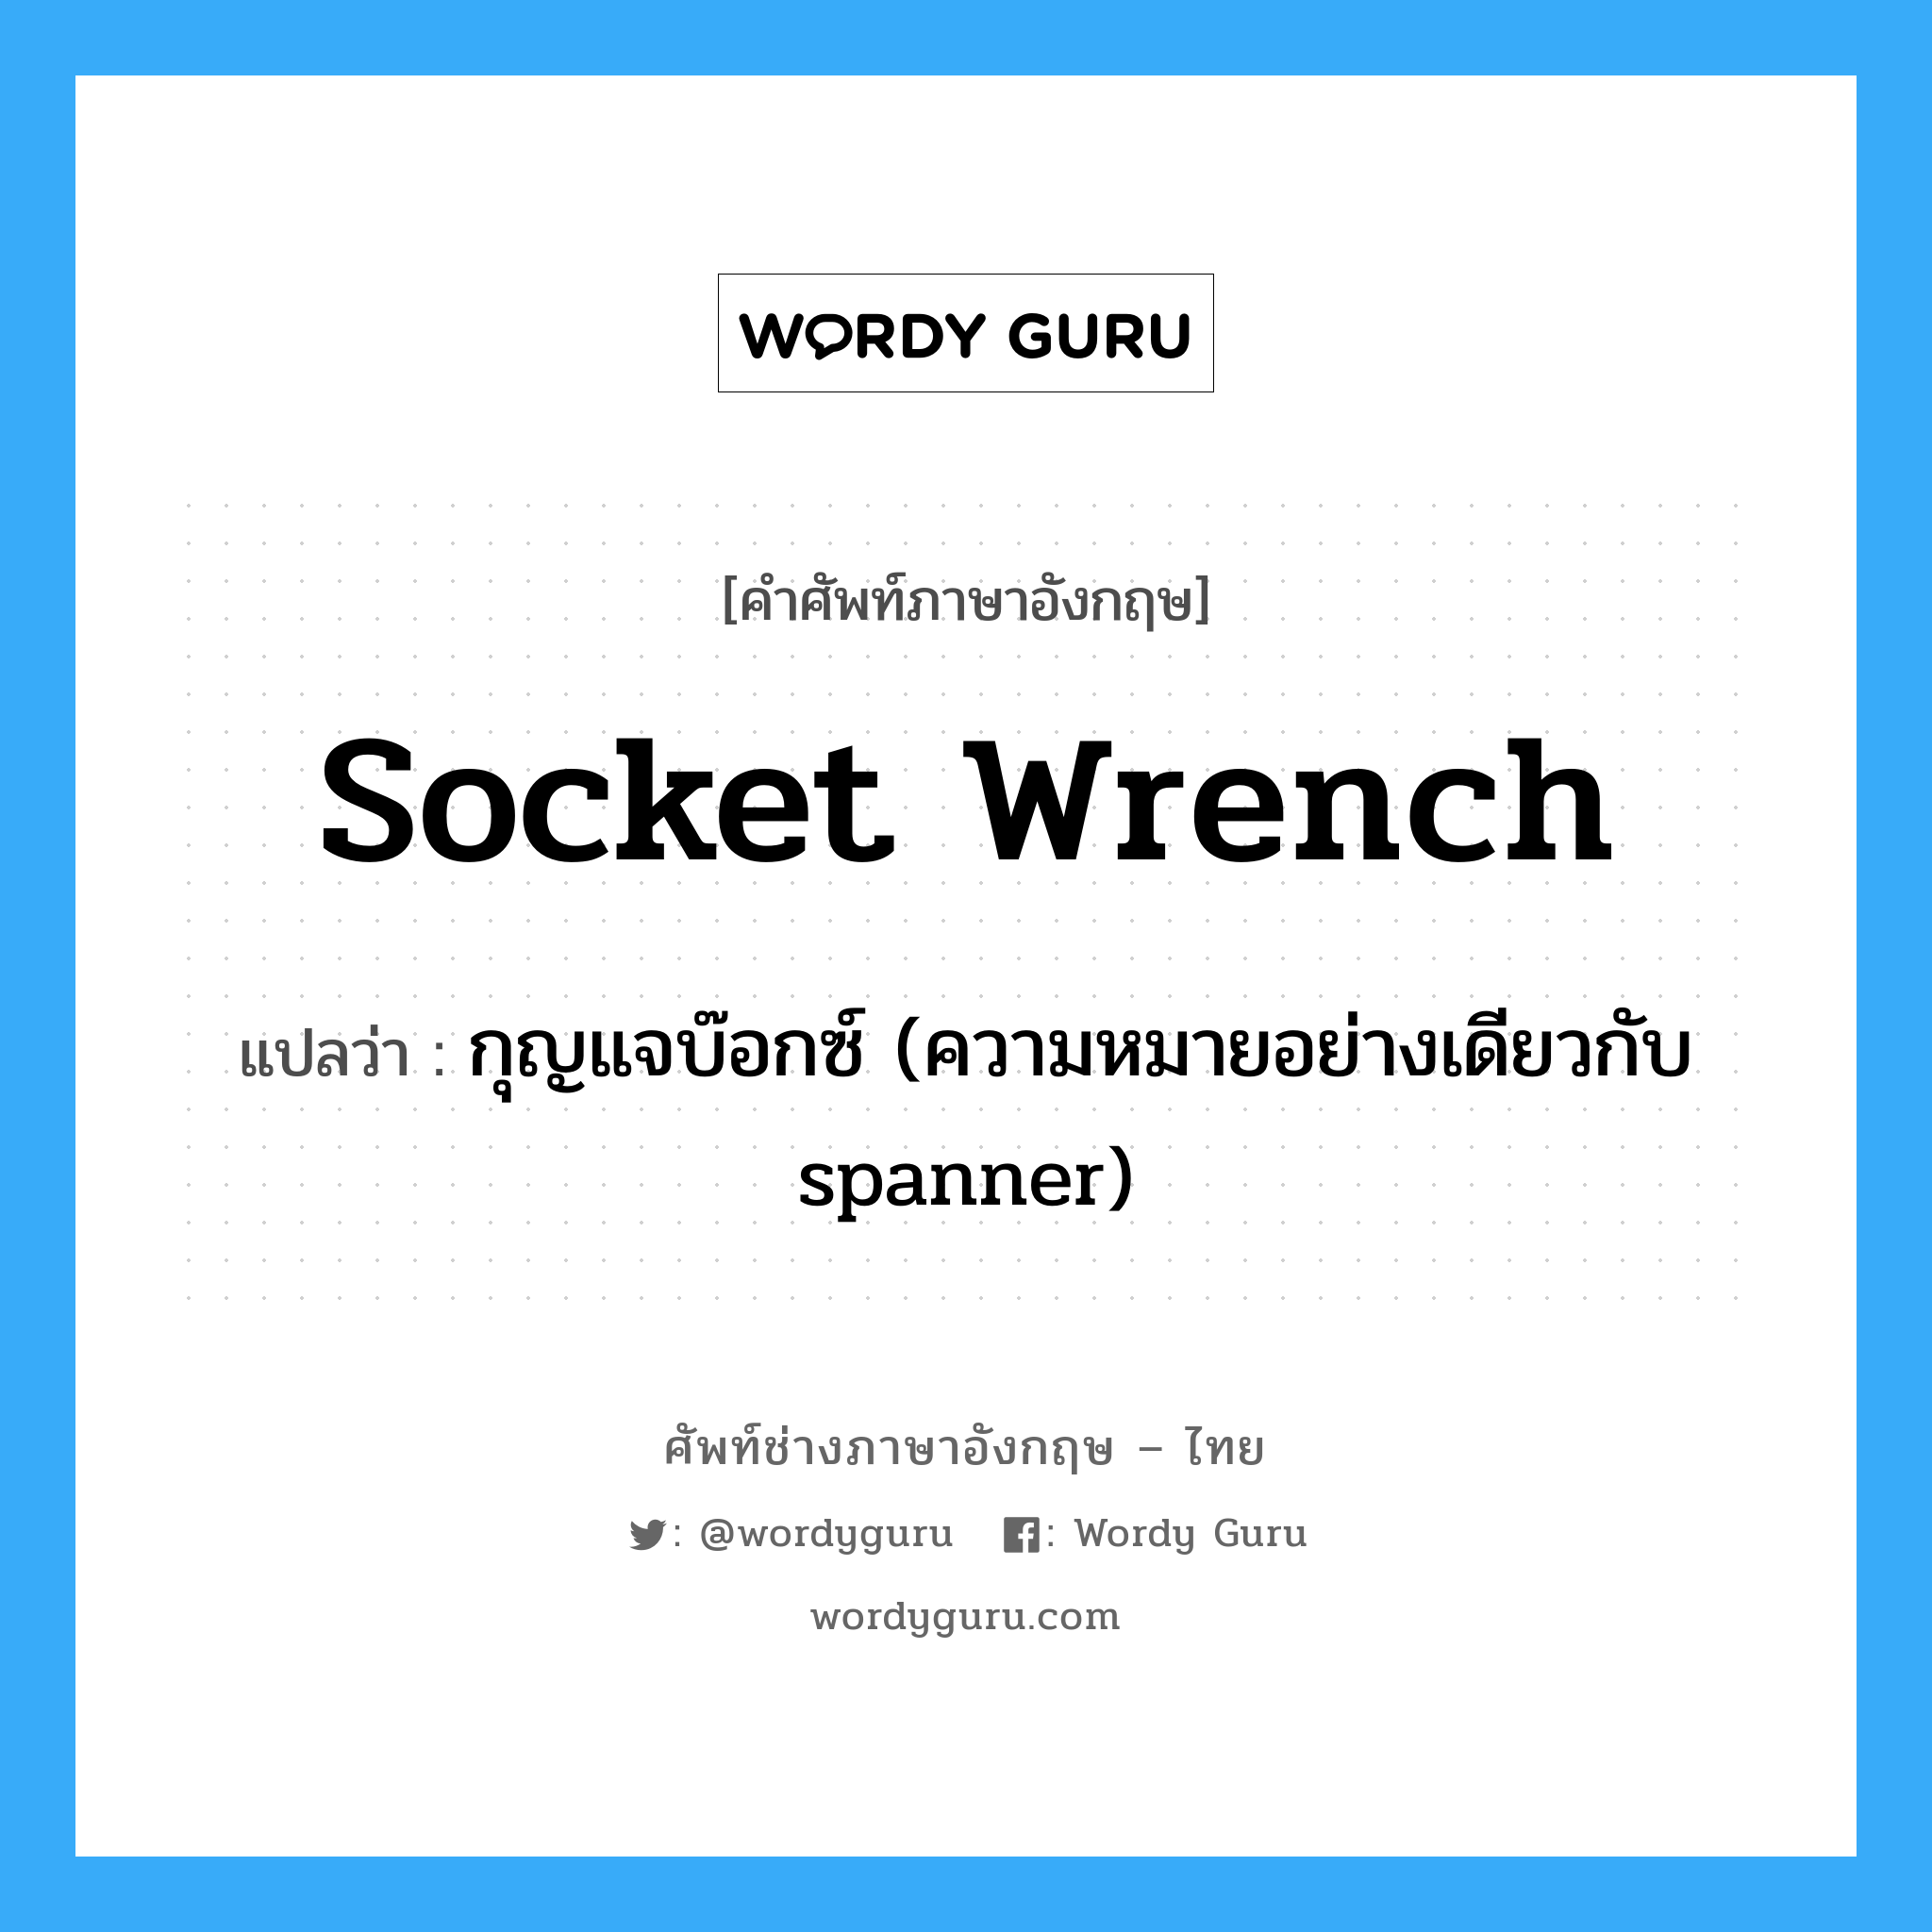 กุญแจบ๊อกซ์ (ความหมายอย่างเดียวกับ spanner) ภาษาอังกฤษ?, คำศัพท์ช่างภาษาอังกฤษ - ไทย กุญแจบ๊อกซ์ (ความหมายอย่างเดียวกับ spanner) คำศัพท์ภาษาอังกฤษ กุญแจบ๊อกซ์ (ความหมายอย่างเดียวกับ spanner) แปลว่า socket wrench